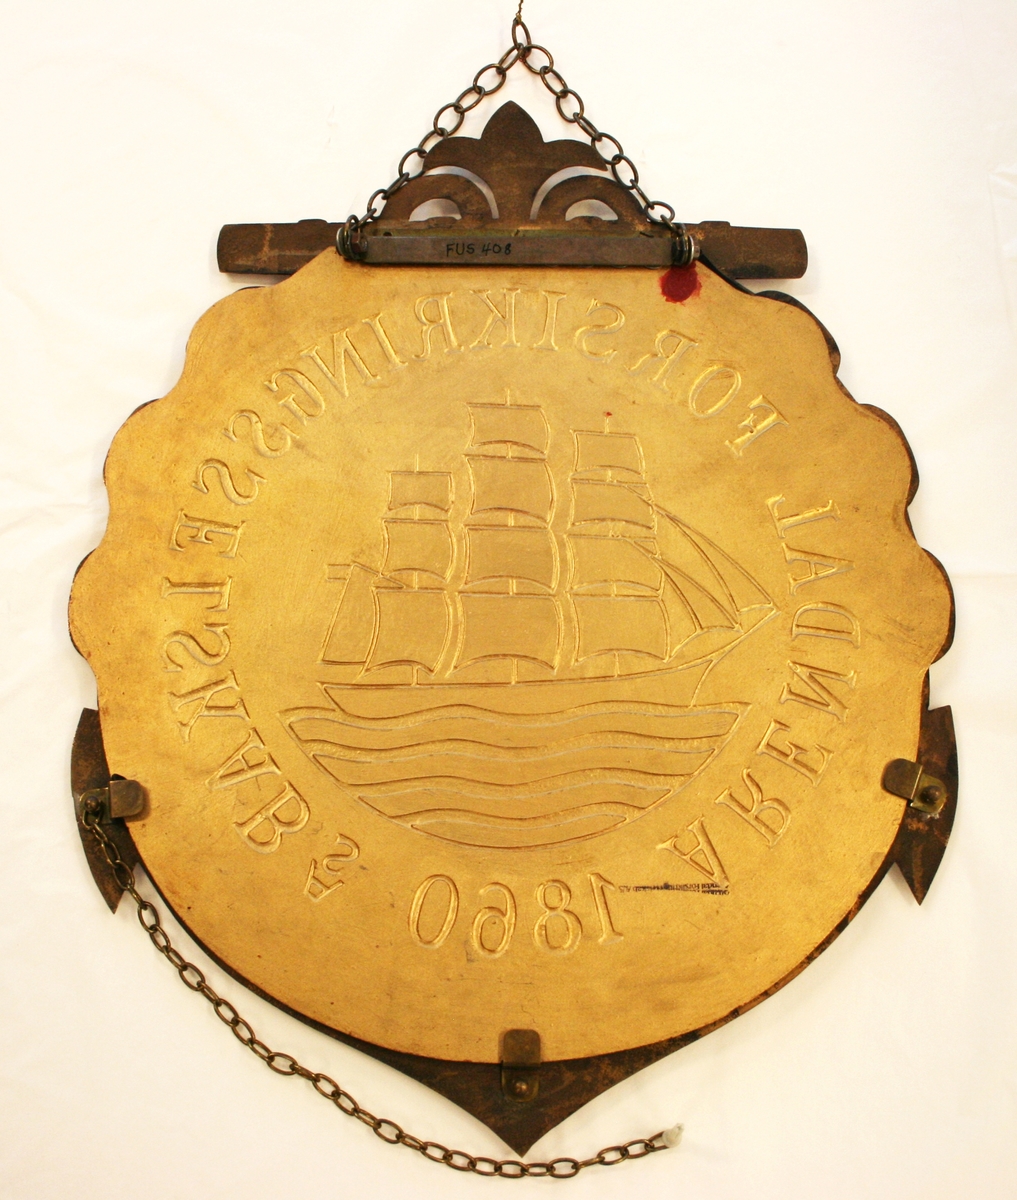 Skiltet har rød bakgrunn, og viser en sort fullrigger med hvite segl, som segler på blått hav. Rundt skipet står det: "Arendal forsikringsselskab AS 1860" i gullfarvede bokstaver.